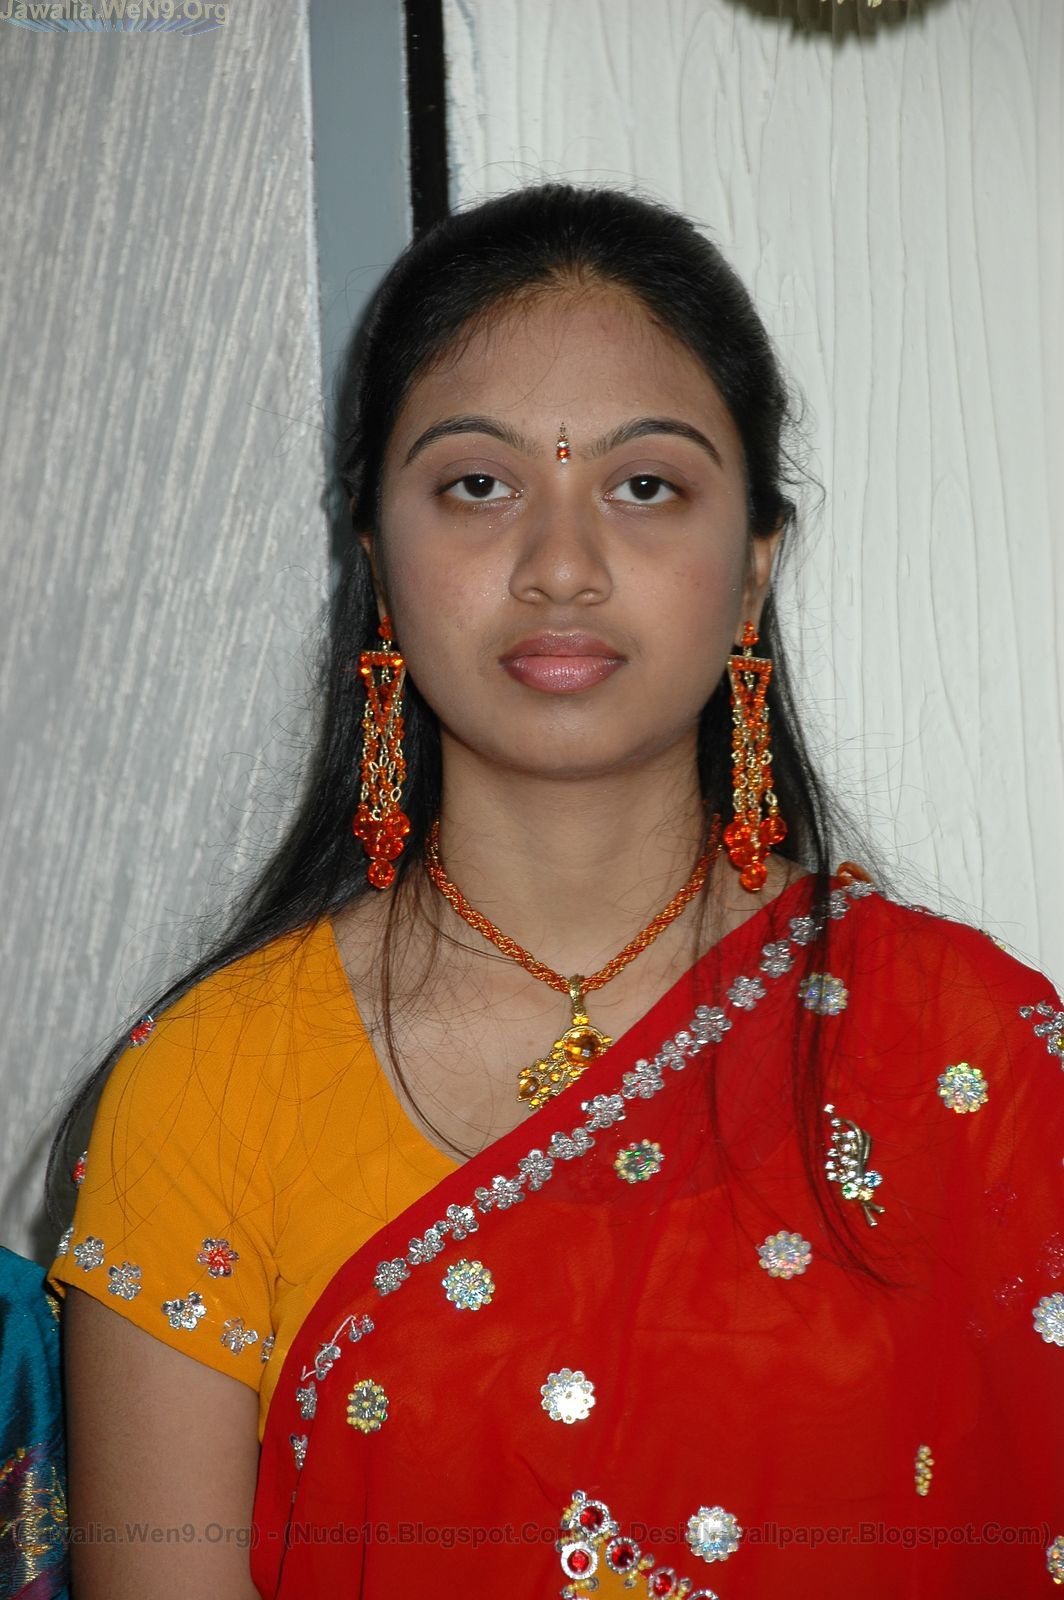 Indias No 1 Desi Girls Wallpapers Collection Indian Desi Girls N